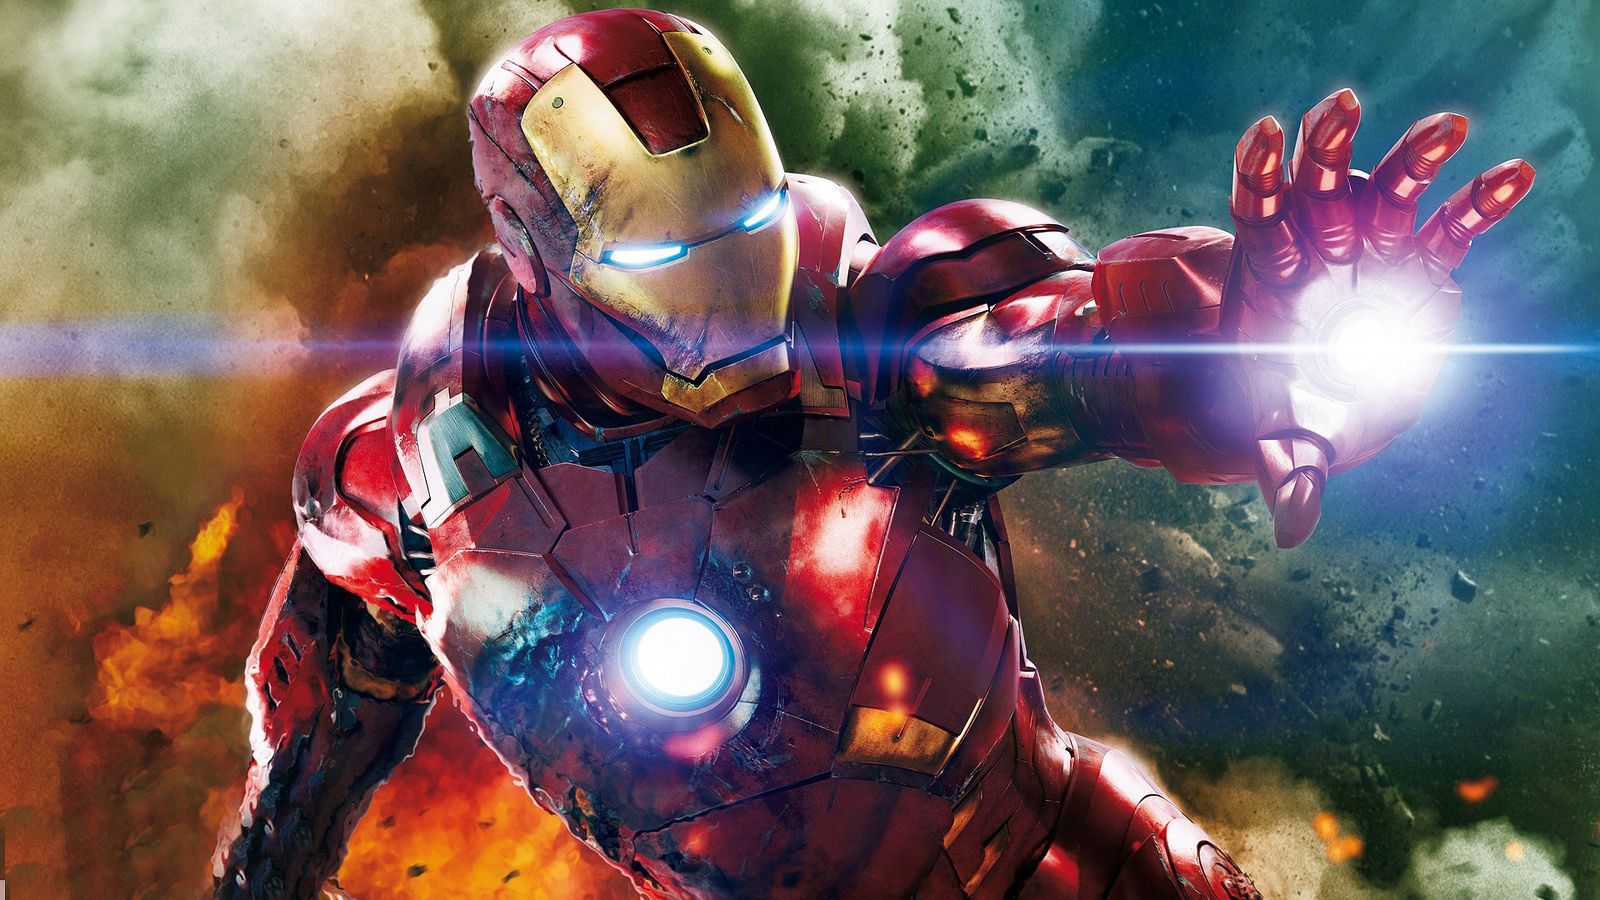 Is Elon Musk, AKA Tony Stark, Building the Real Iron Man?